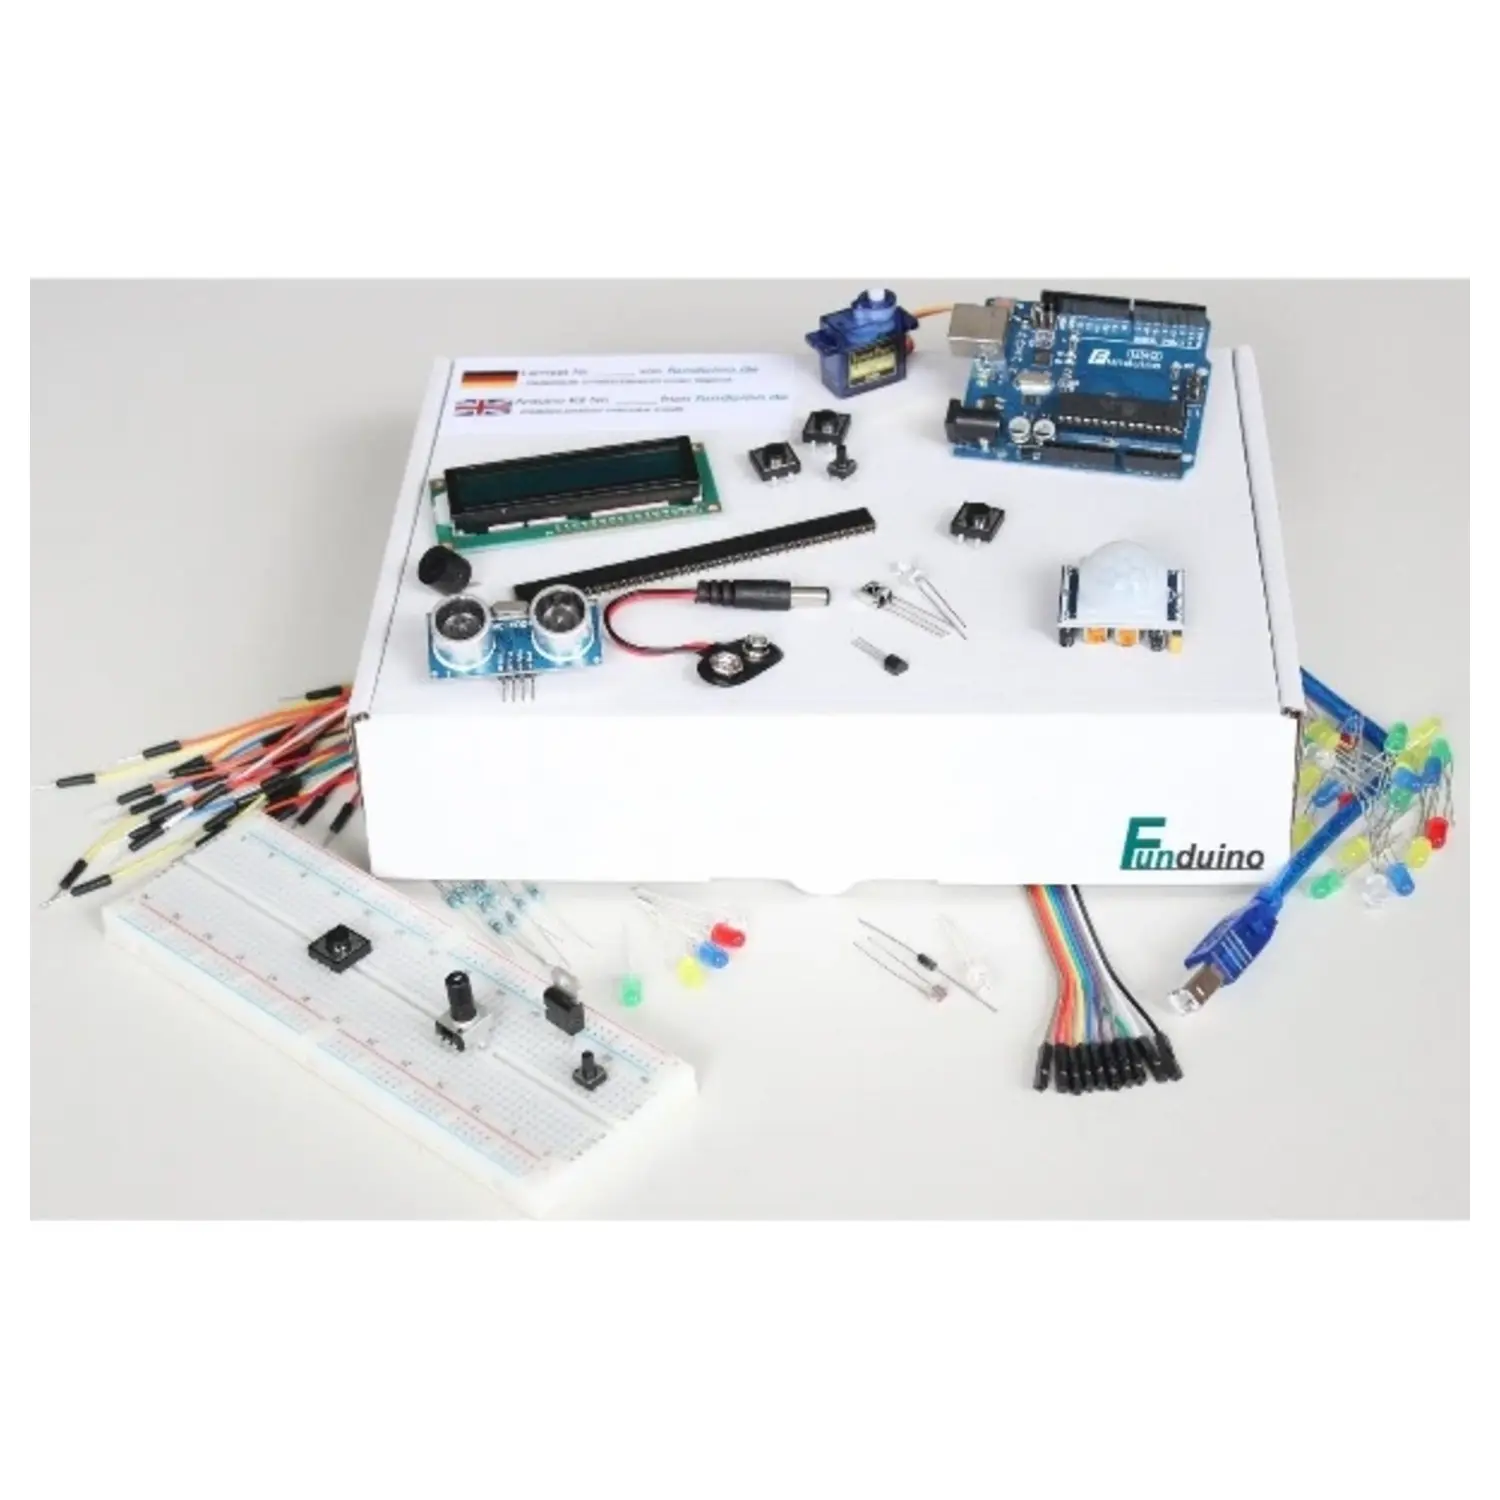 immagine del prodotto kit arduino uno1 funduino compatibile completo di accessori per insegnamento